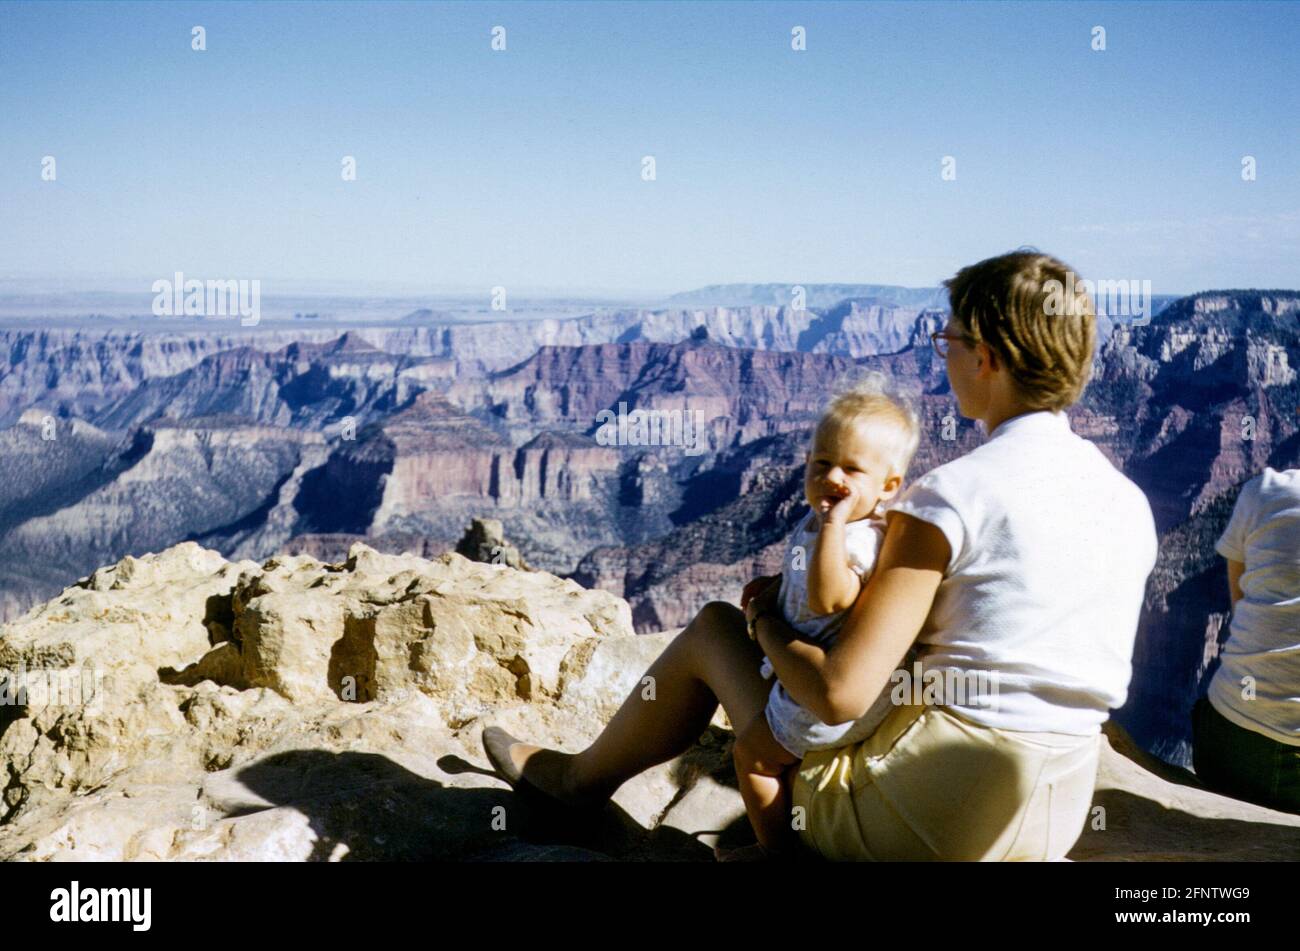 Jeune femme portant un short tenant un bébé blond de 7 à 8 mois assis sur un point de vue au sommet d'une falaise surplombant le Grand Canyon, Colorado, États-Unis dans les années 1950 Banque D'Images